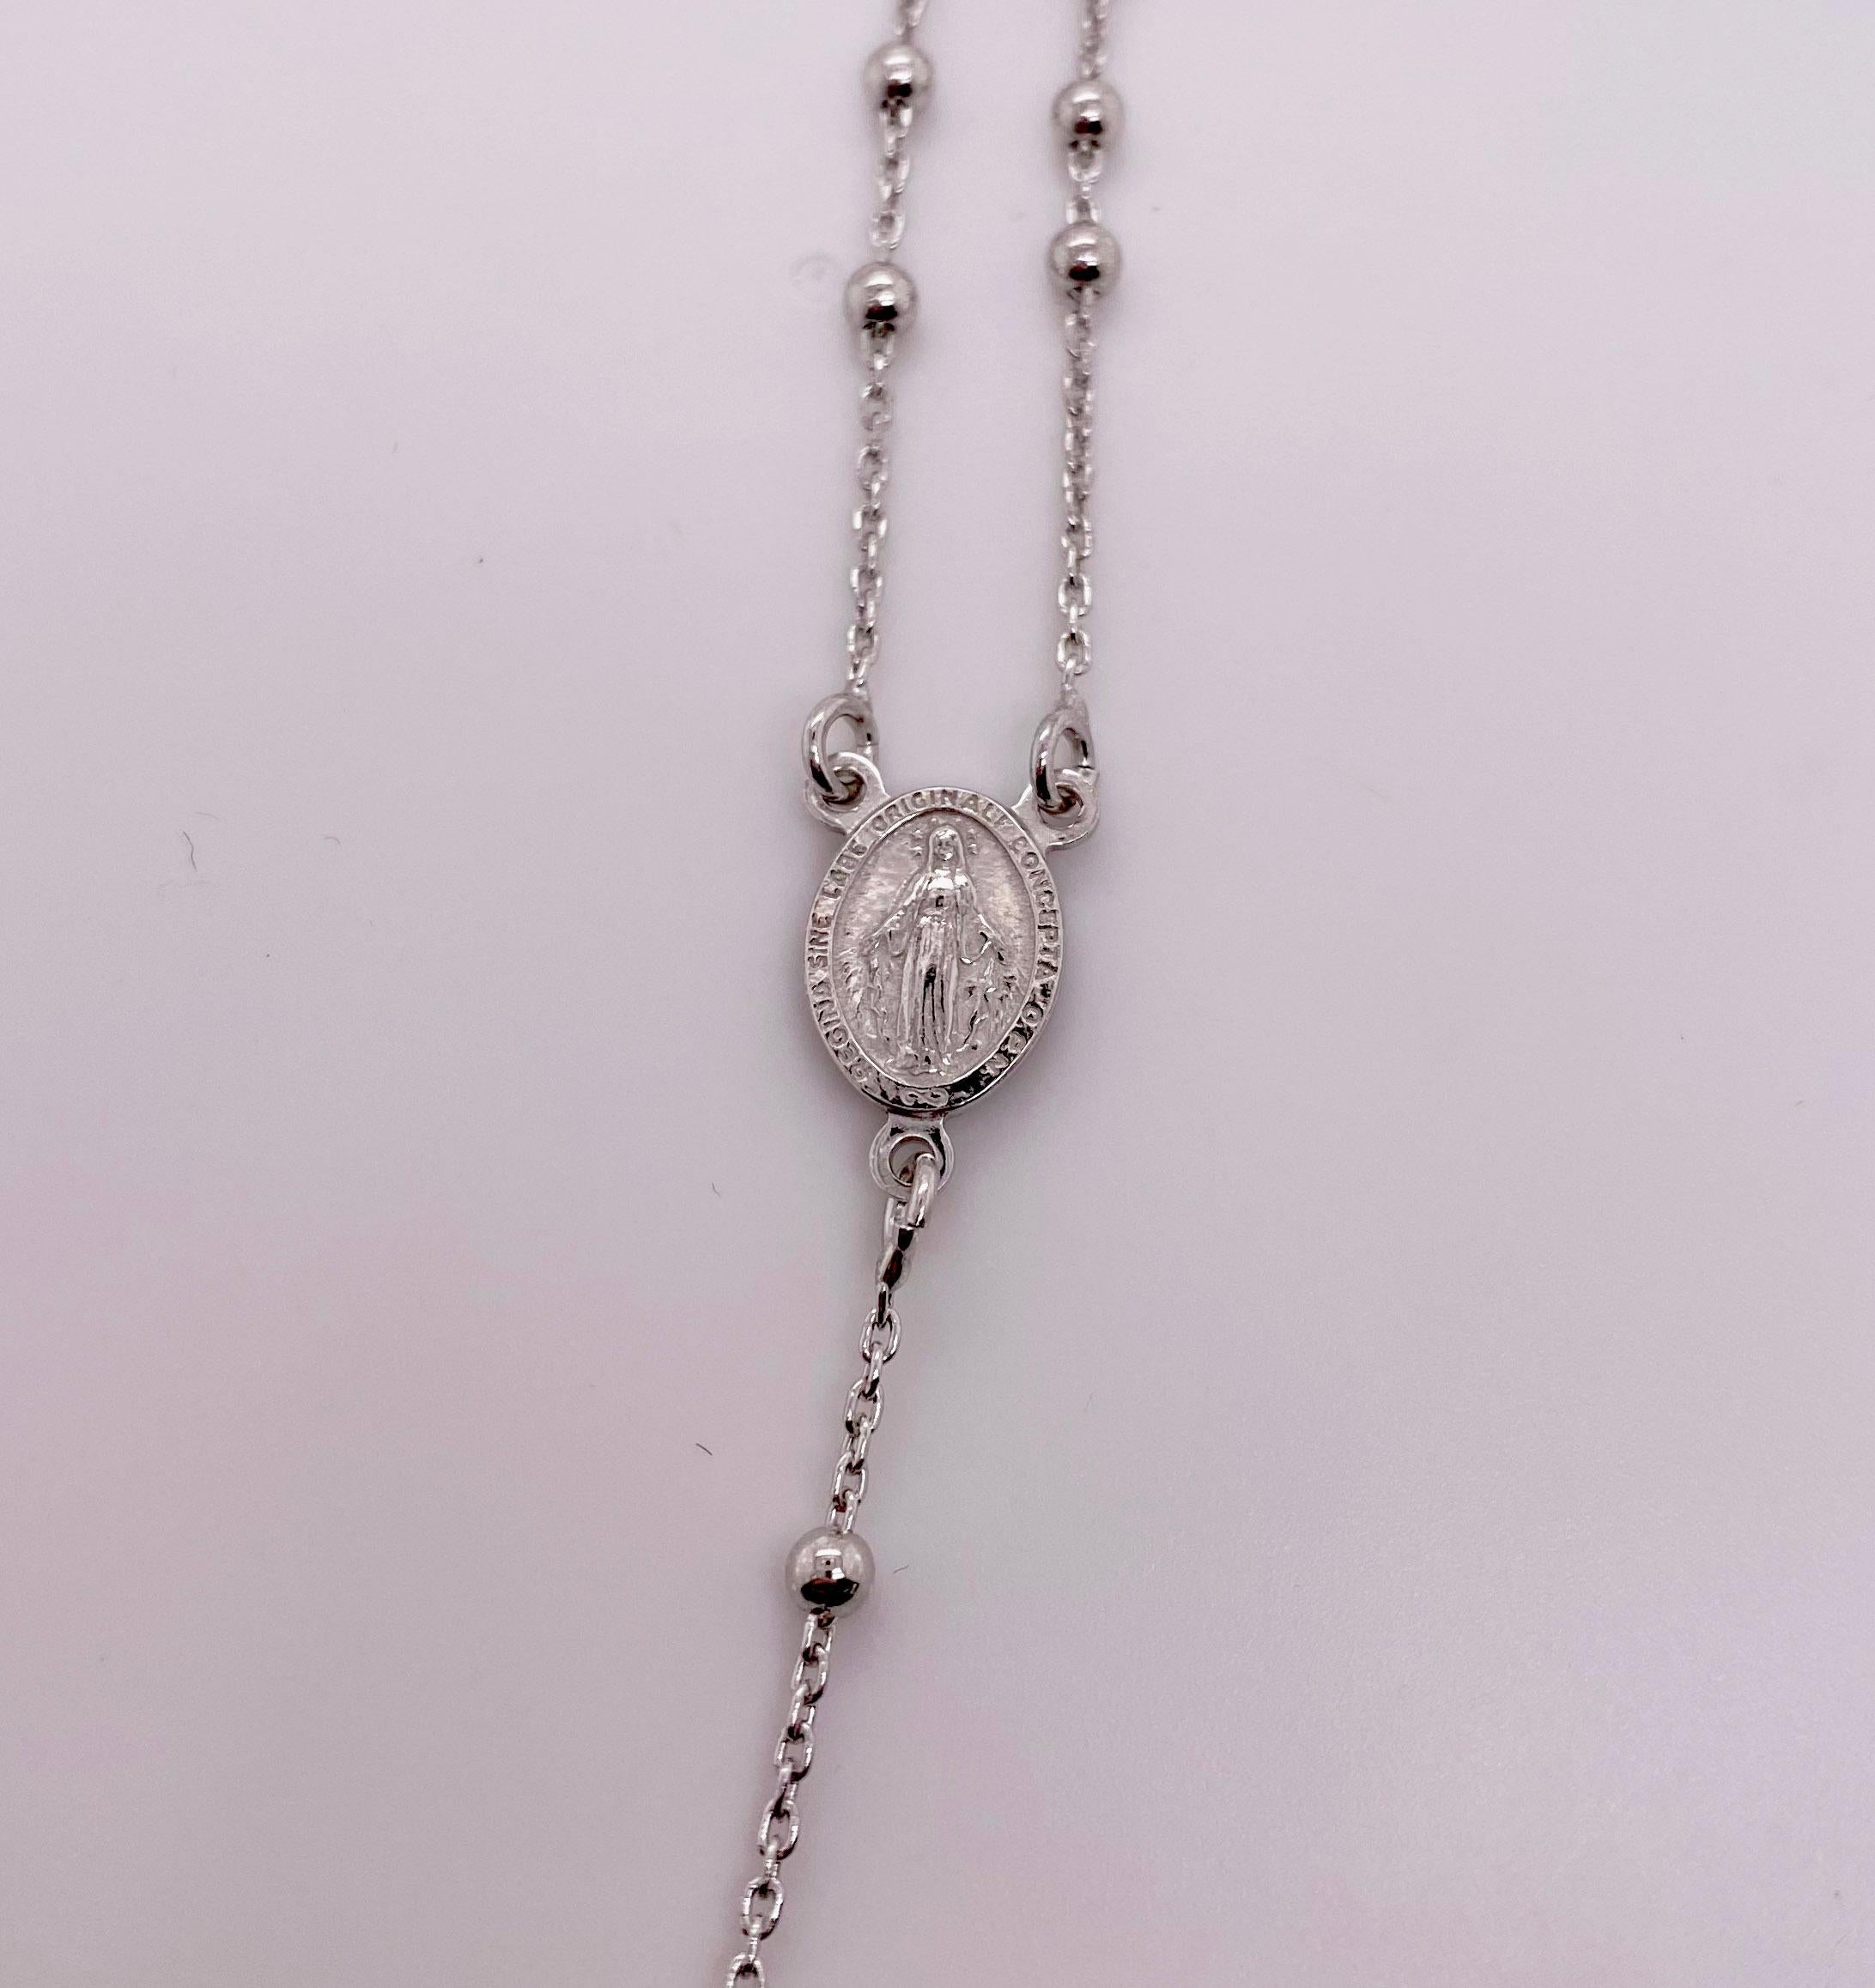 Katholische Rosenkranz-Halskette aus Sterlingsilber (92,5% reines Silber). Diese Halskette ist das perfekte Gebet und kann um den Hals getragen werden. Am Ende der Halskette befindet sich ein wunderschönes Kreuz.
Die Details zu dieser schönen